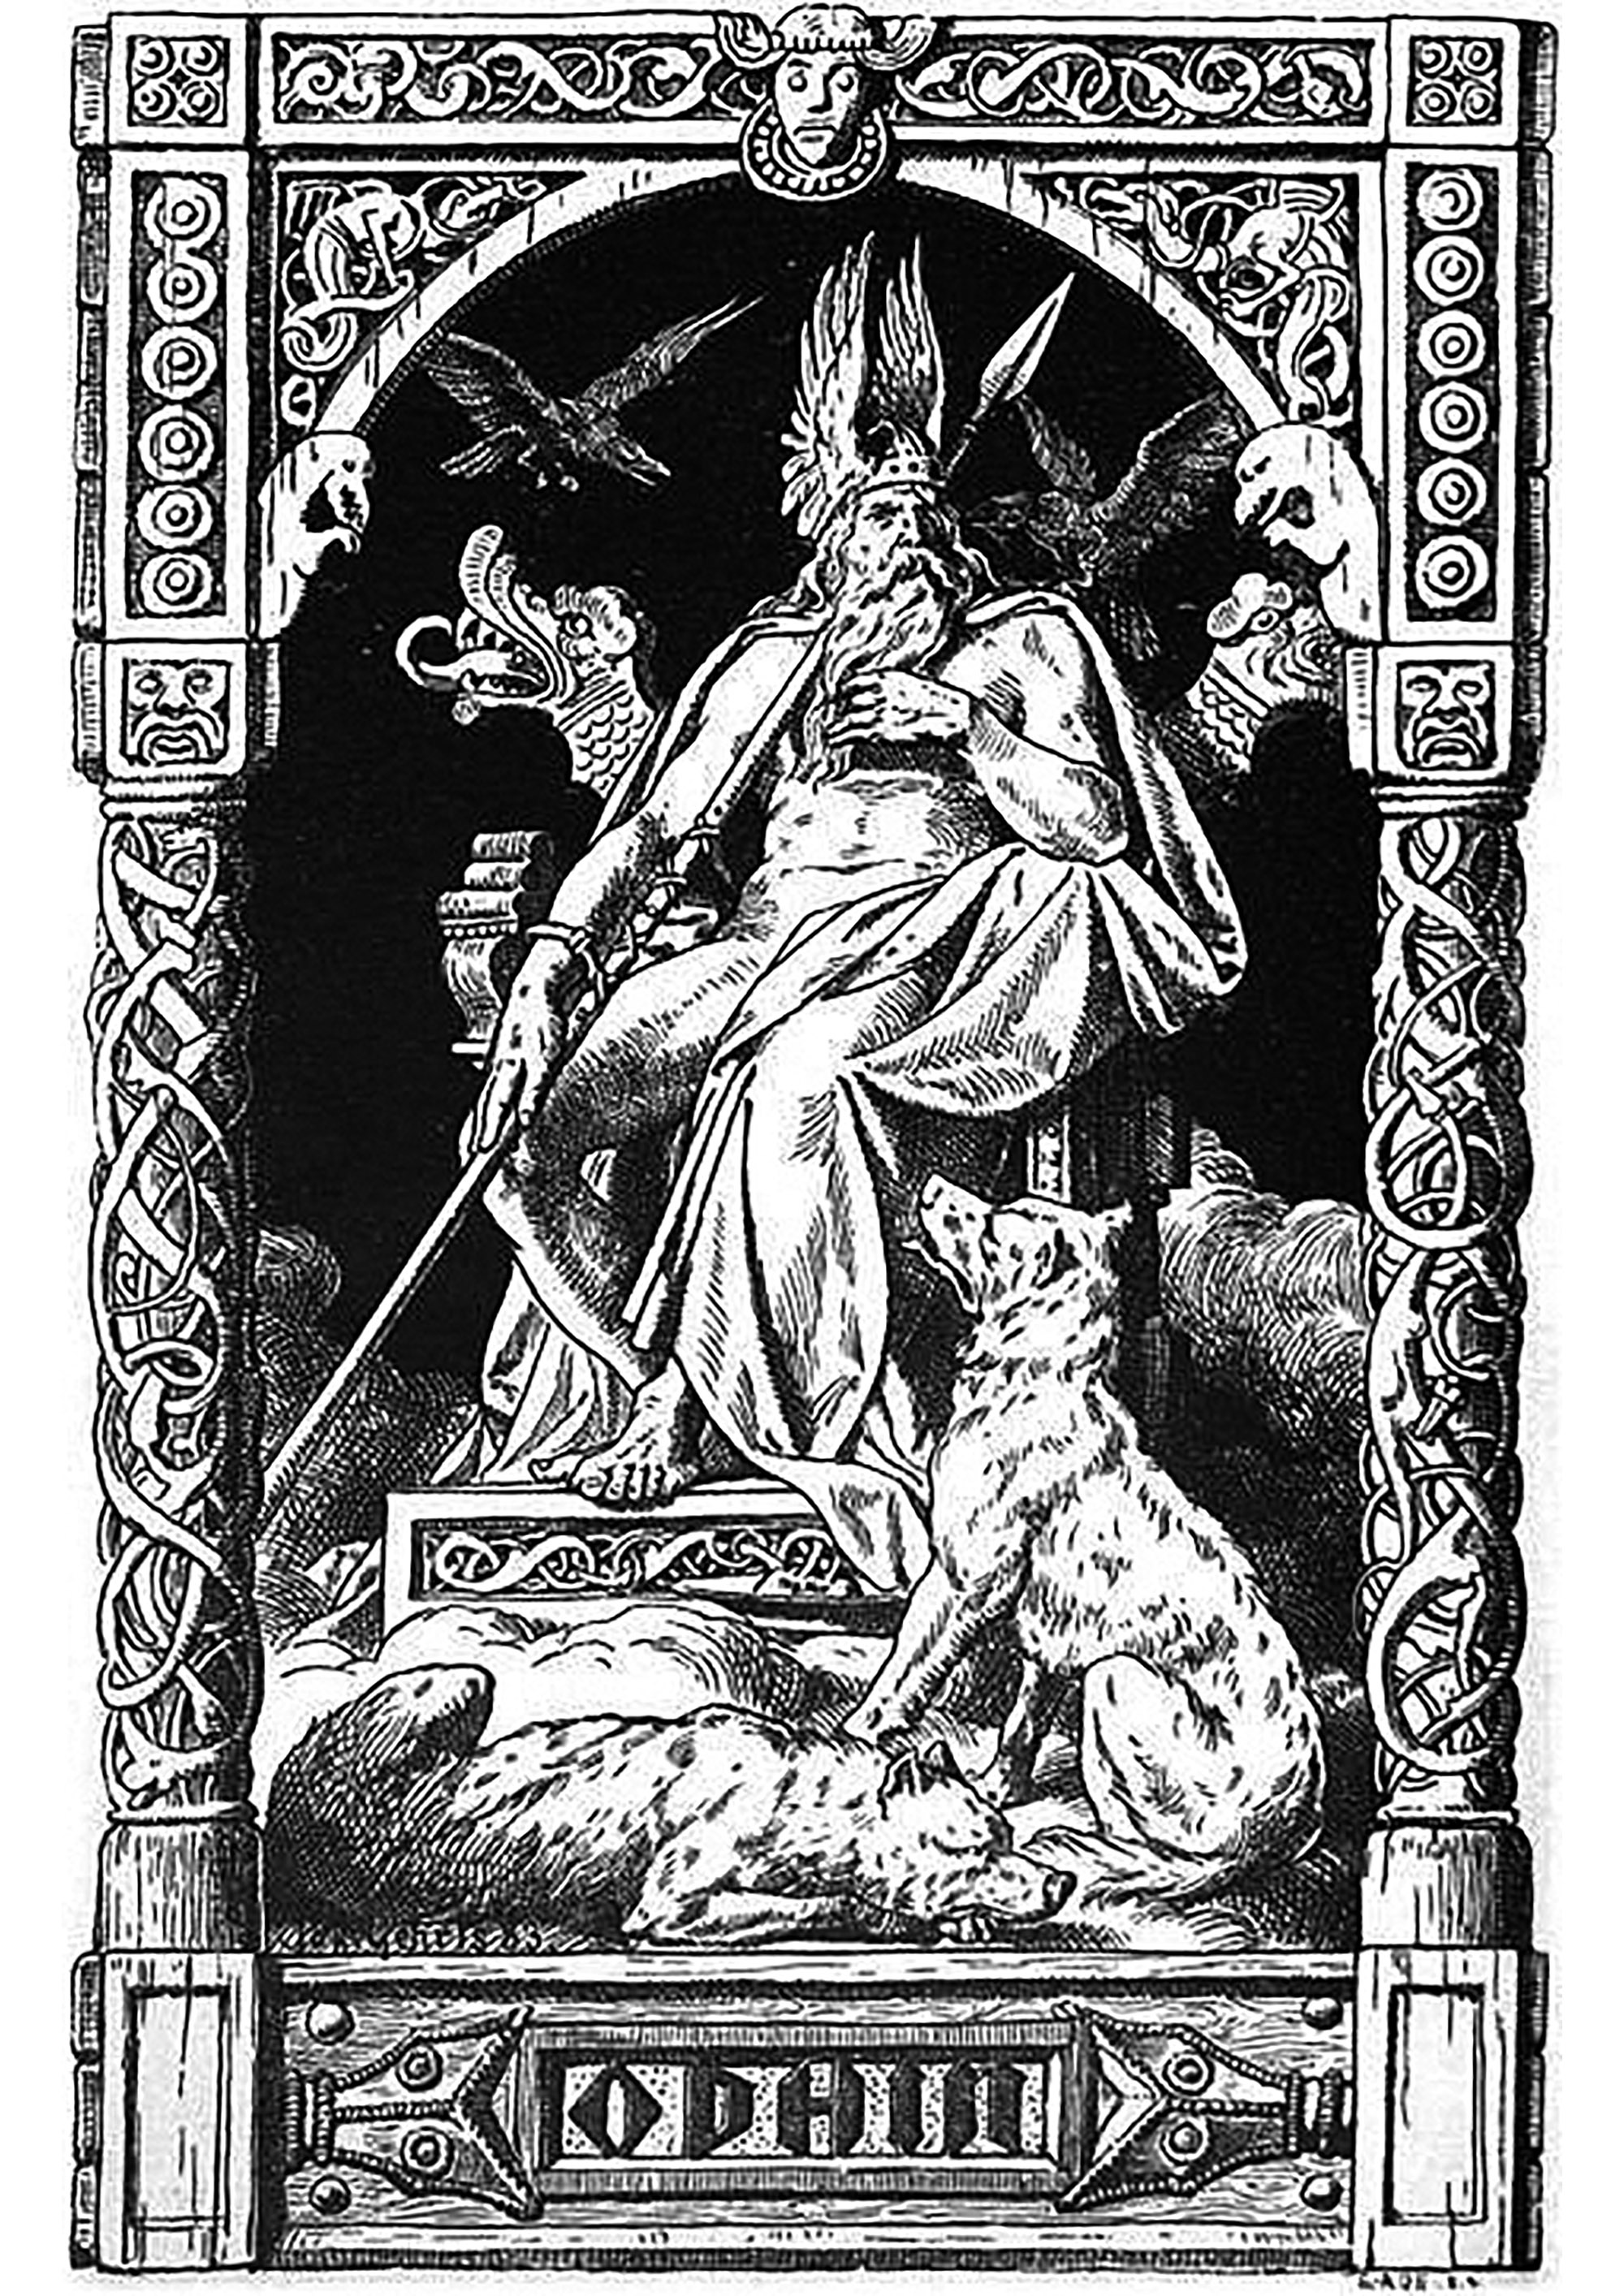 Odino - illustrazione di Johannes Gehrts (1855, 1921). Questa illustrazione mostra Odino, il dio principale della mitologia norrena, in trono. È circondato dai suoi due corvi, Hugin e Munin, che sono i suoi messaggeri e gli riferiscono tutto ciò che accade nel mondo.